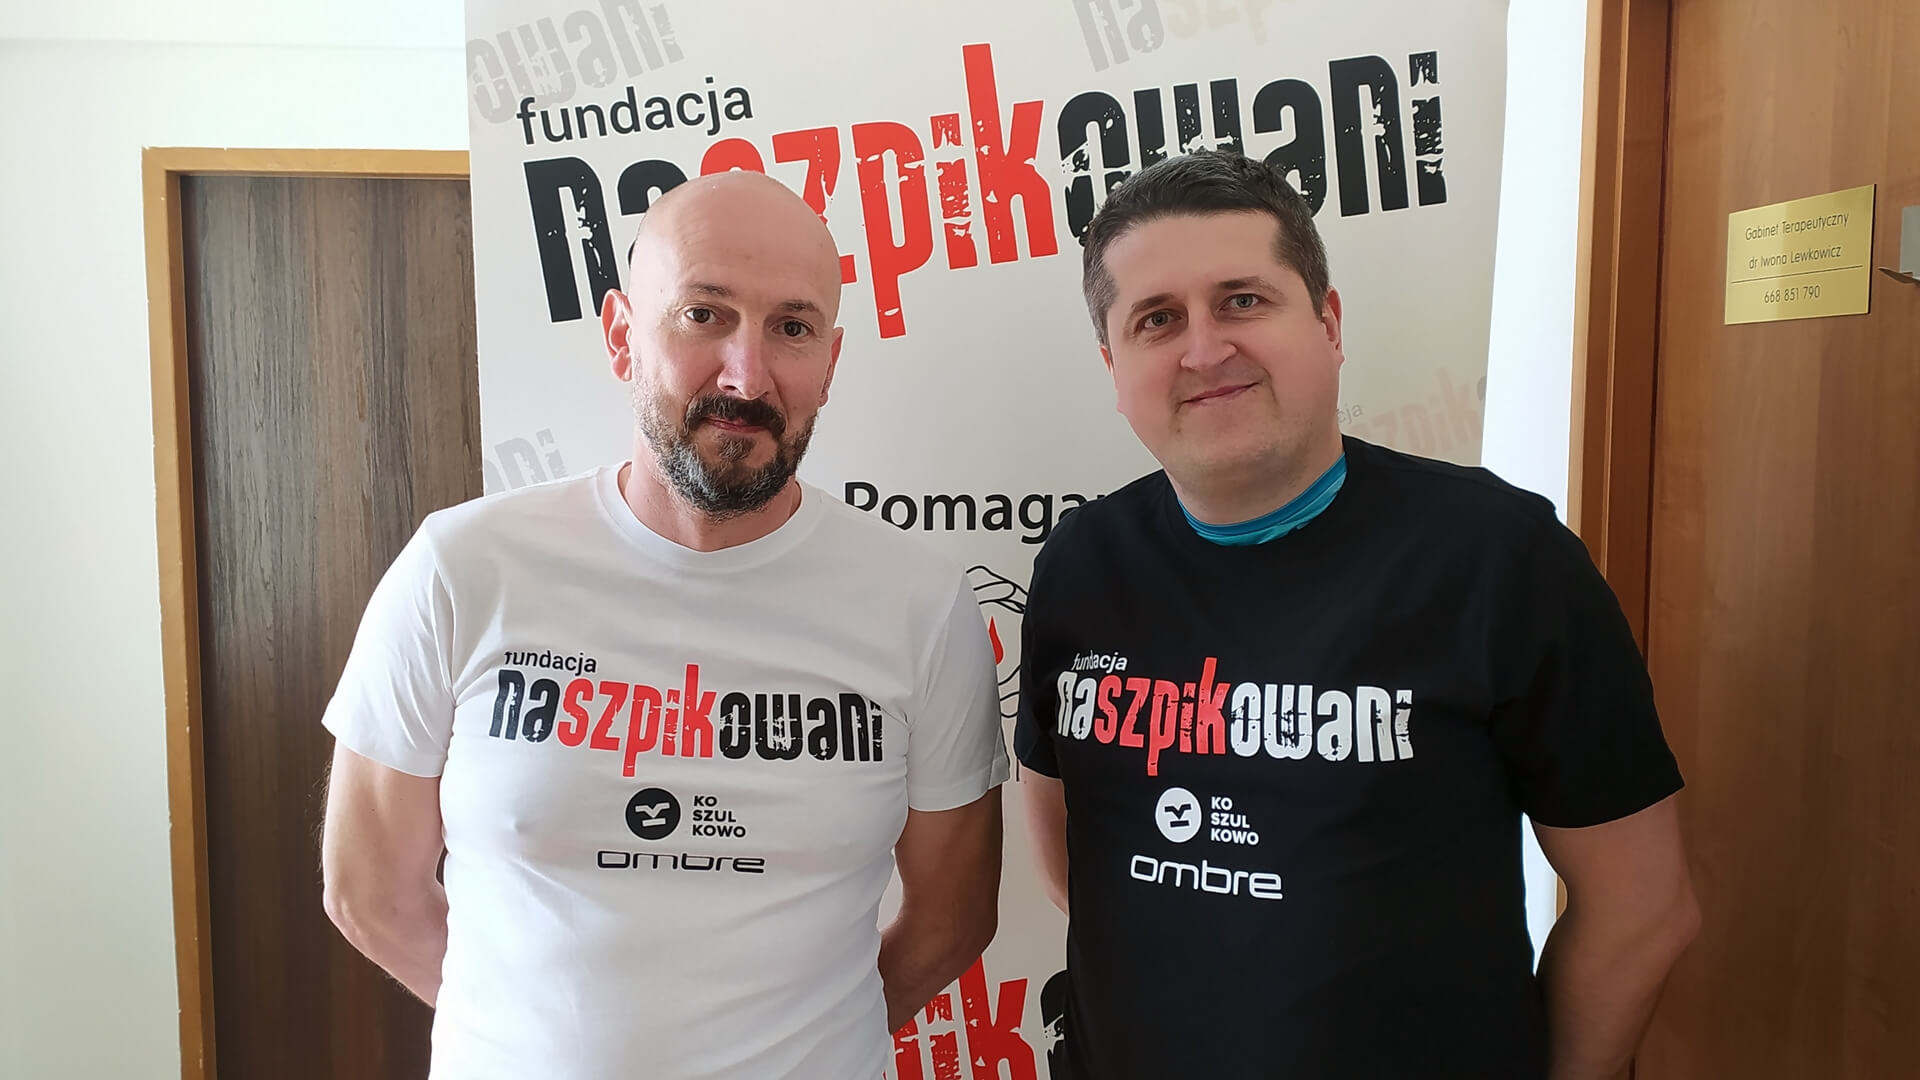 Rafał Dubiejko i Łukasz Kononiuk, fot. Marcin Mazewski